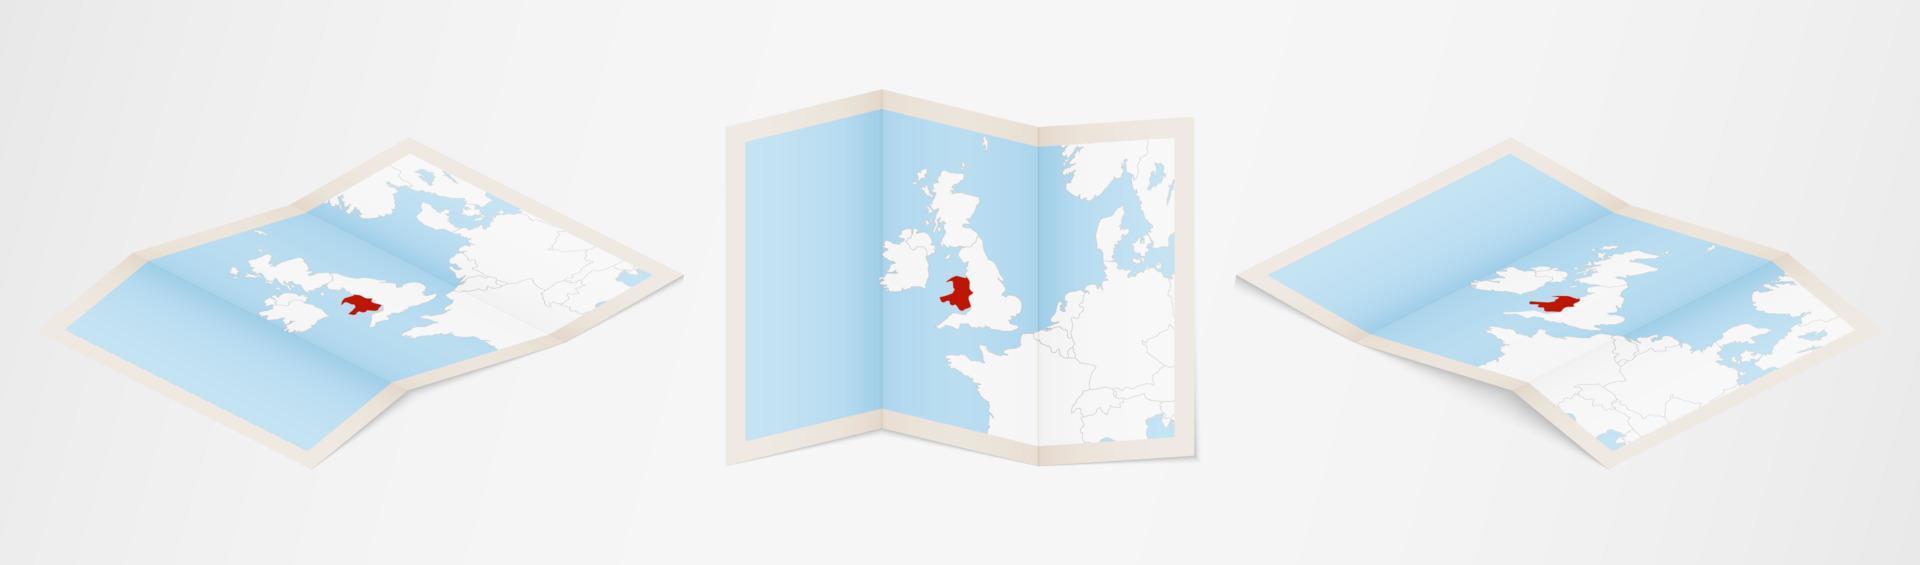 Mapa plegado de Gales en tres versiones diferentes. vector